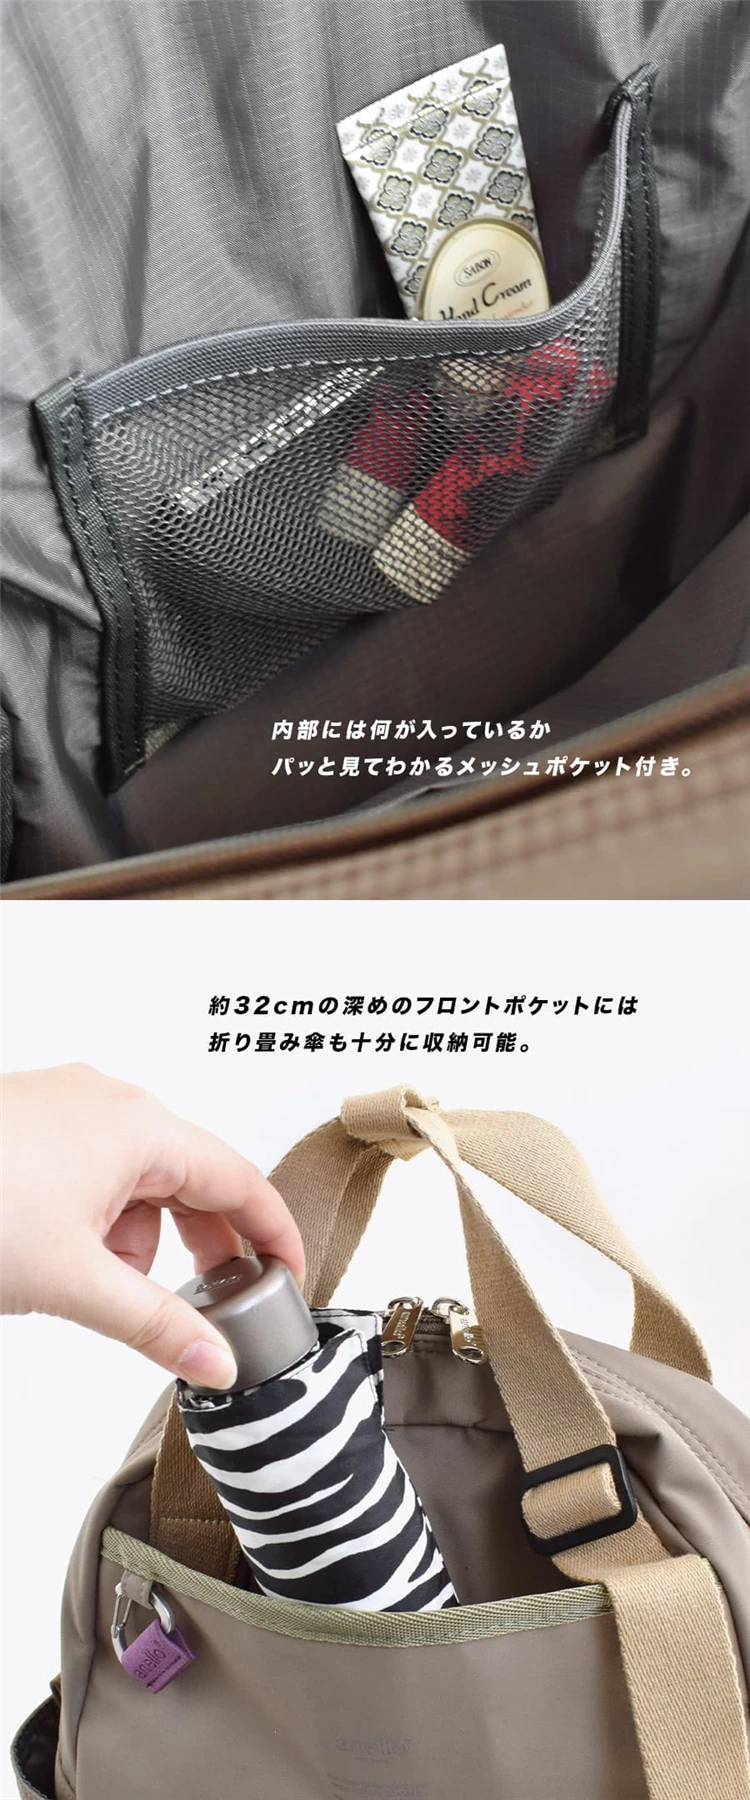 Japanese Unisex 2WAY Backpack handbags Work travel Shoulder bag waterproof college school bags students Minimalist Mochilas